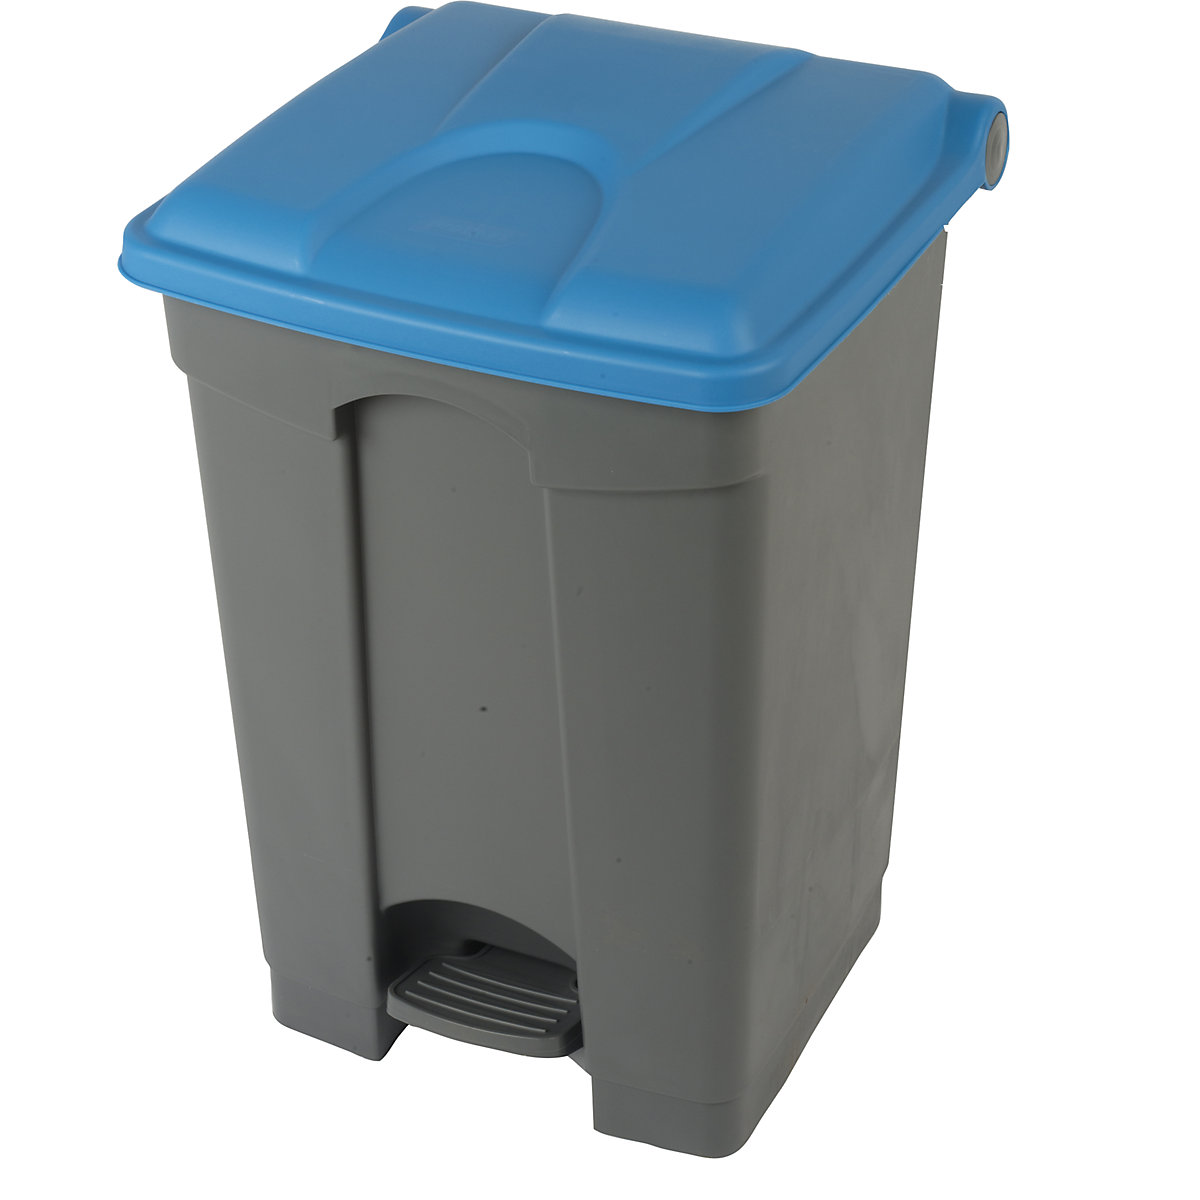 Colector de residuos con pedal, capacidad 45 l, A x H x P 410 x 600 x 400 mm, gris, tapa azul-7